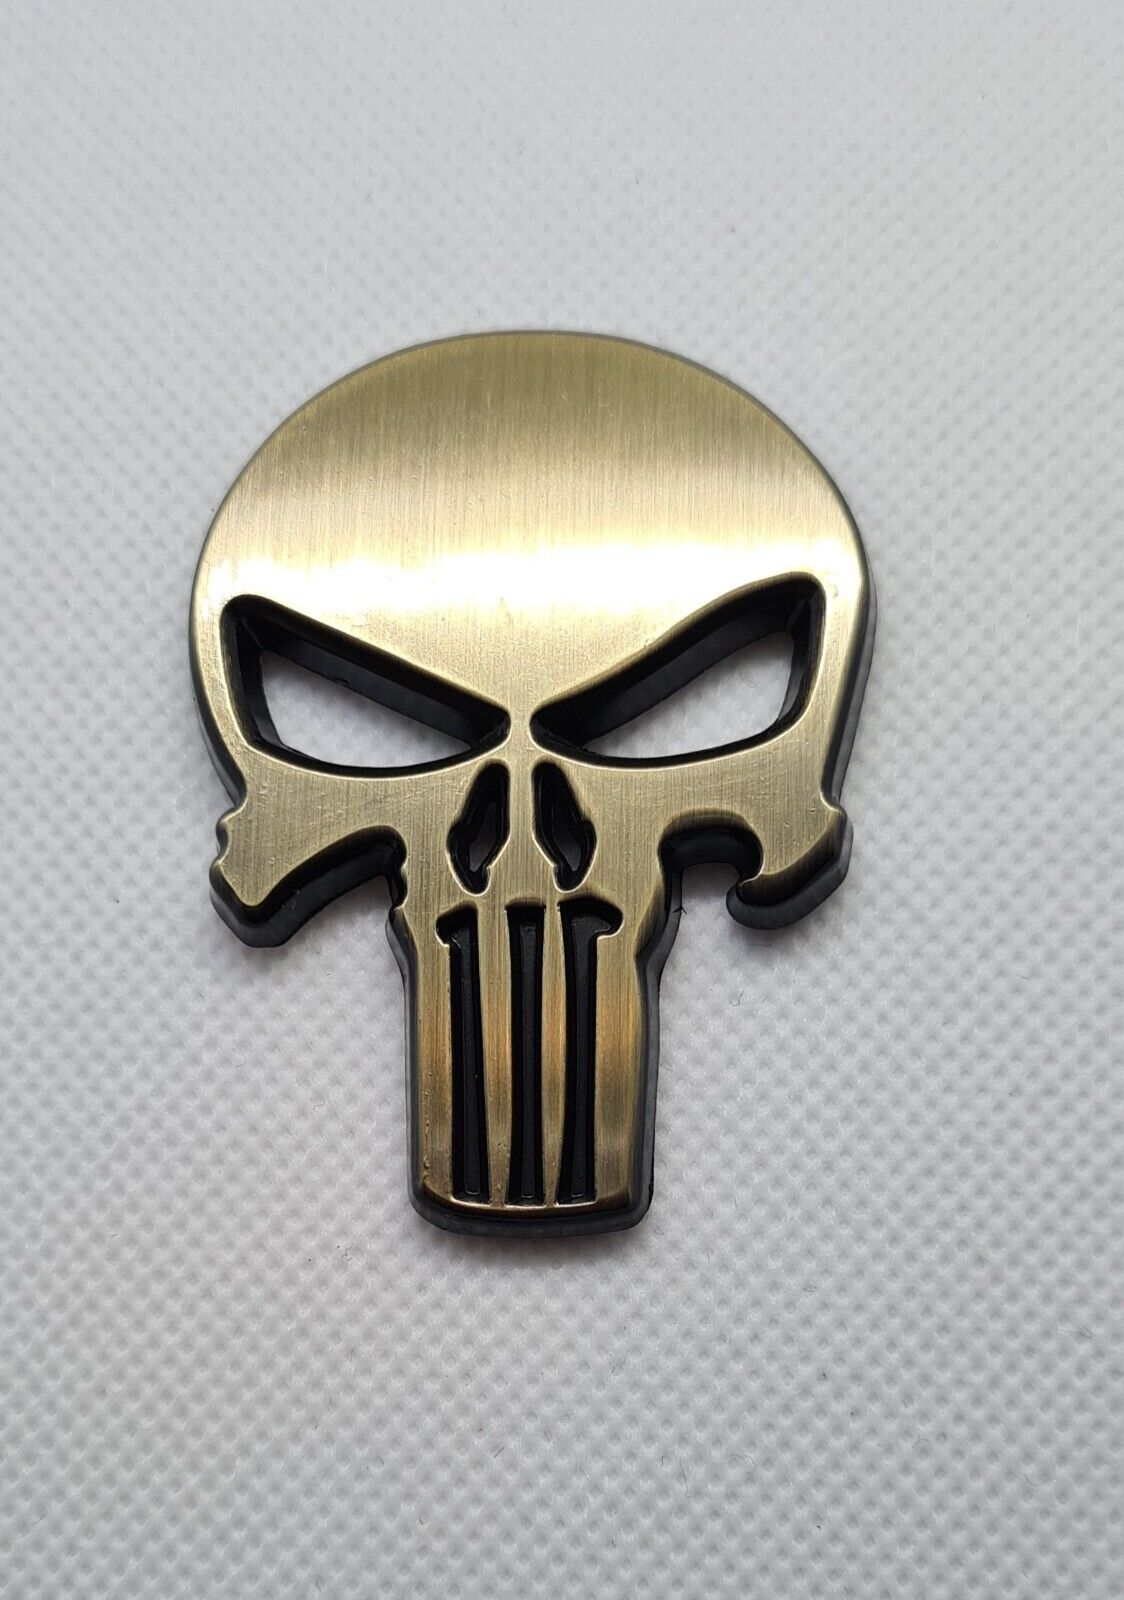 3D Metal Emblem Sticker Skeleton Skull Decal Badge Bike Car Truck COOPER